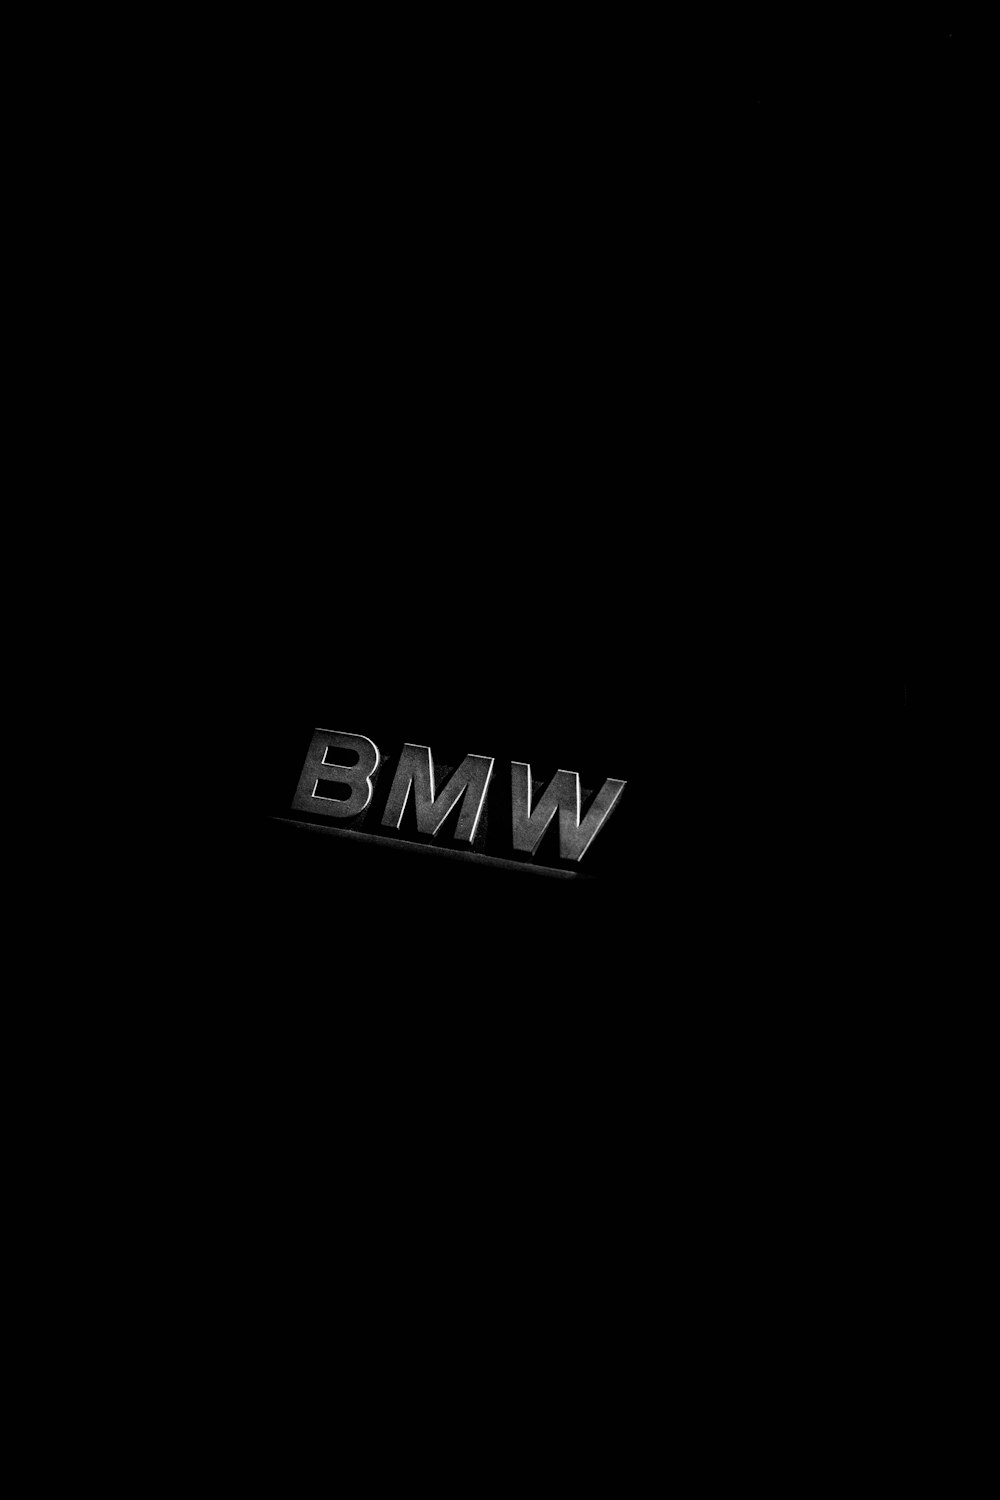 Emblema BMW no fundo preto